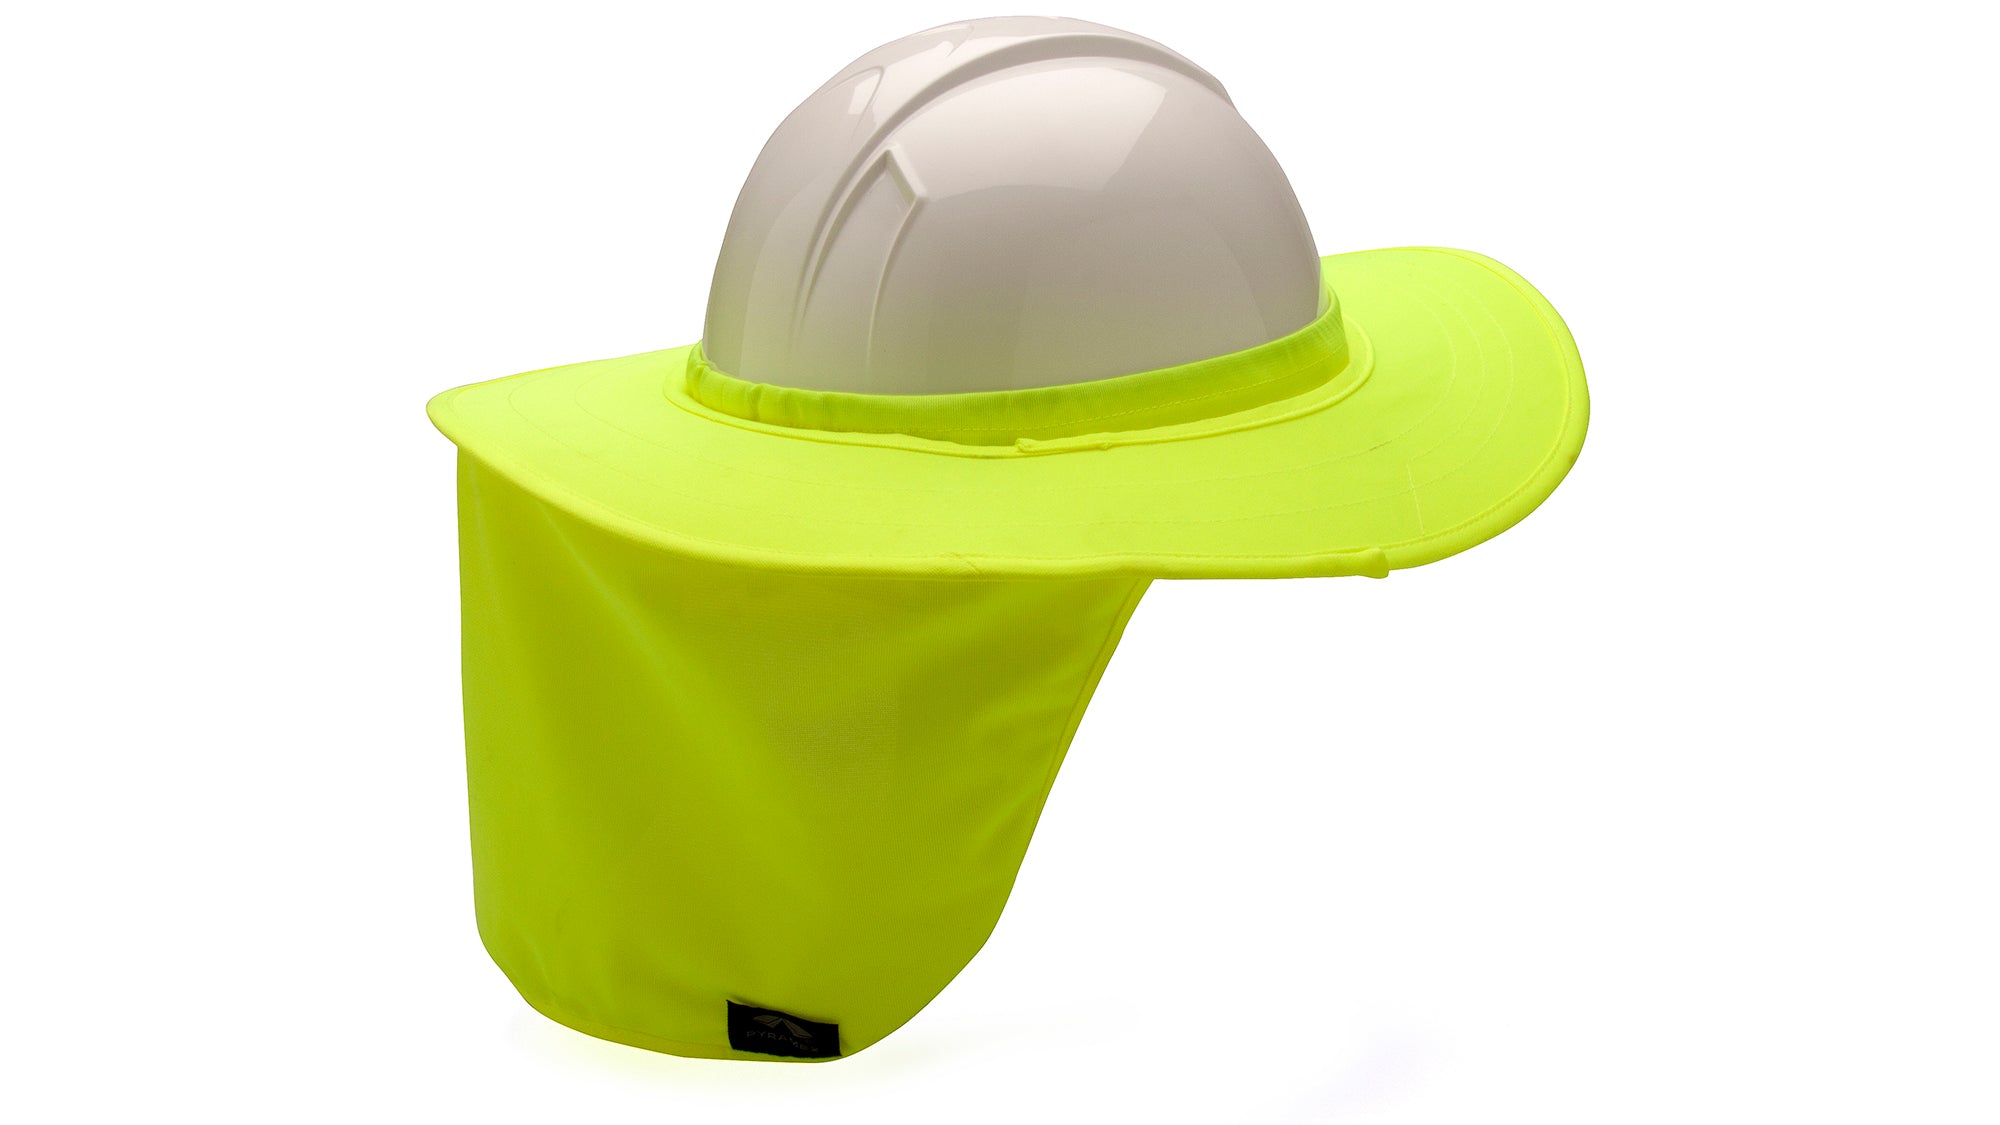 Pyramex Hard Hat Shade_Hi-Vis Yellow - Work World - Workwear, Work Boots, Safety Gear